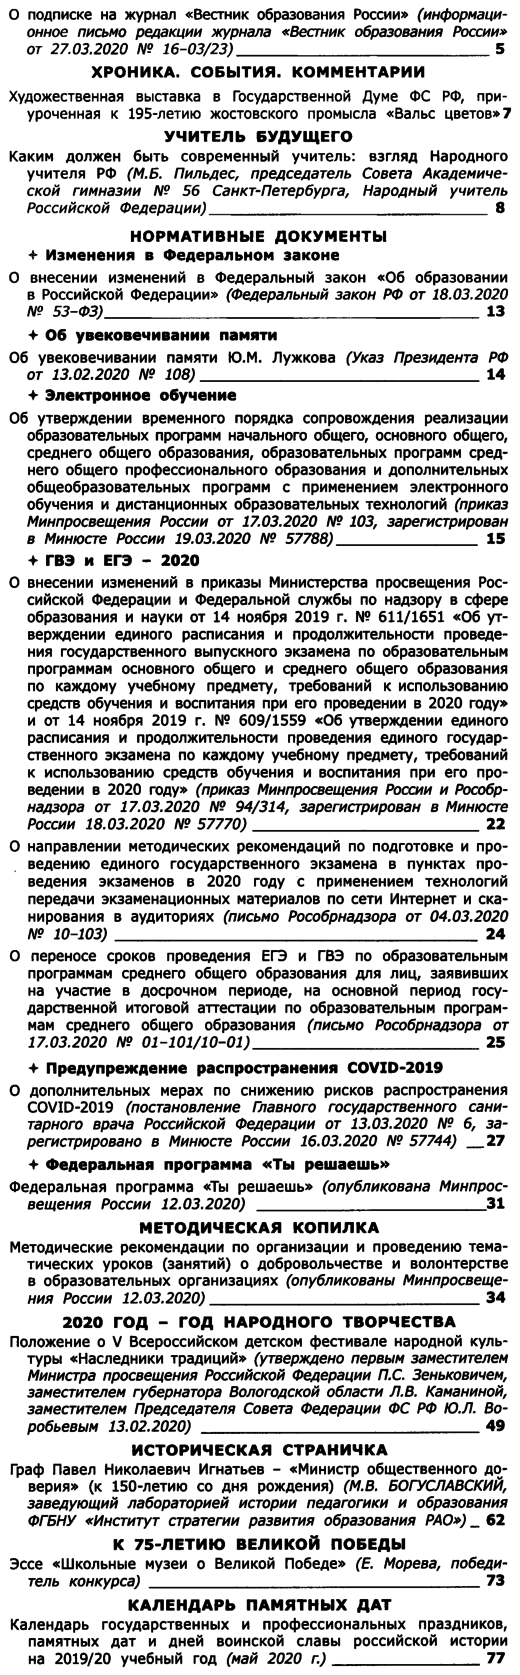 Вестник образования России 2020-08.png